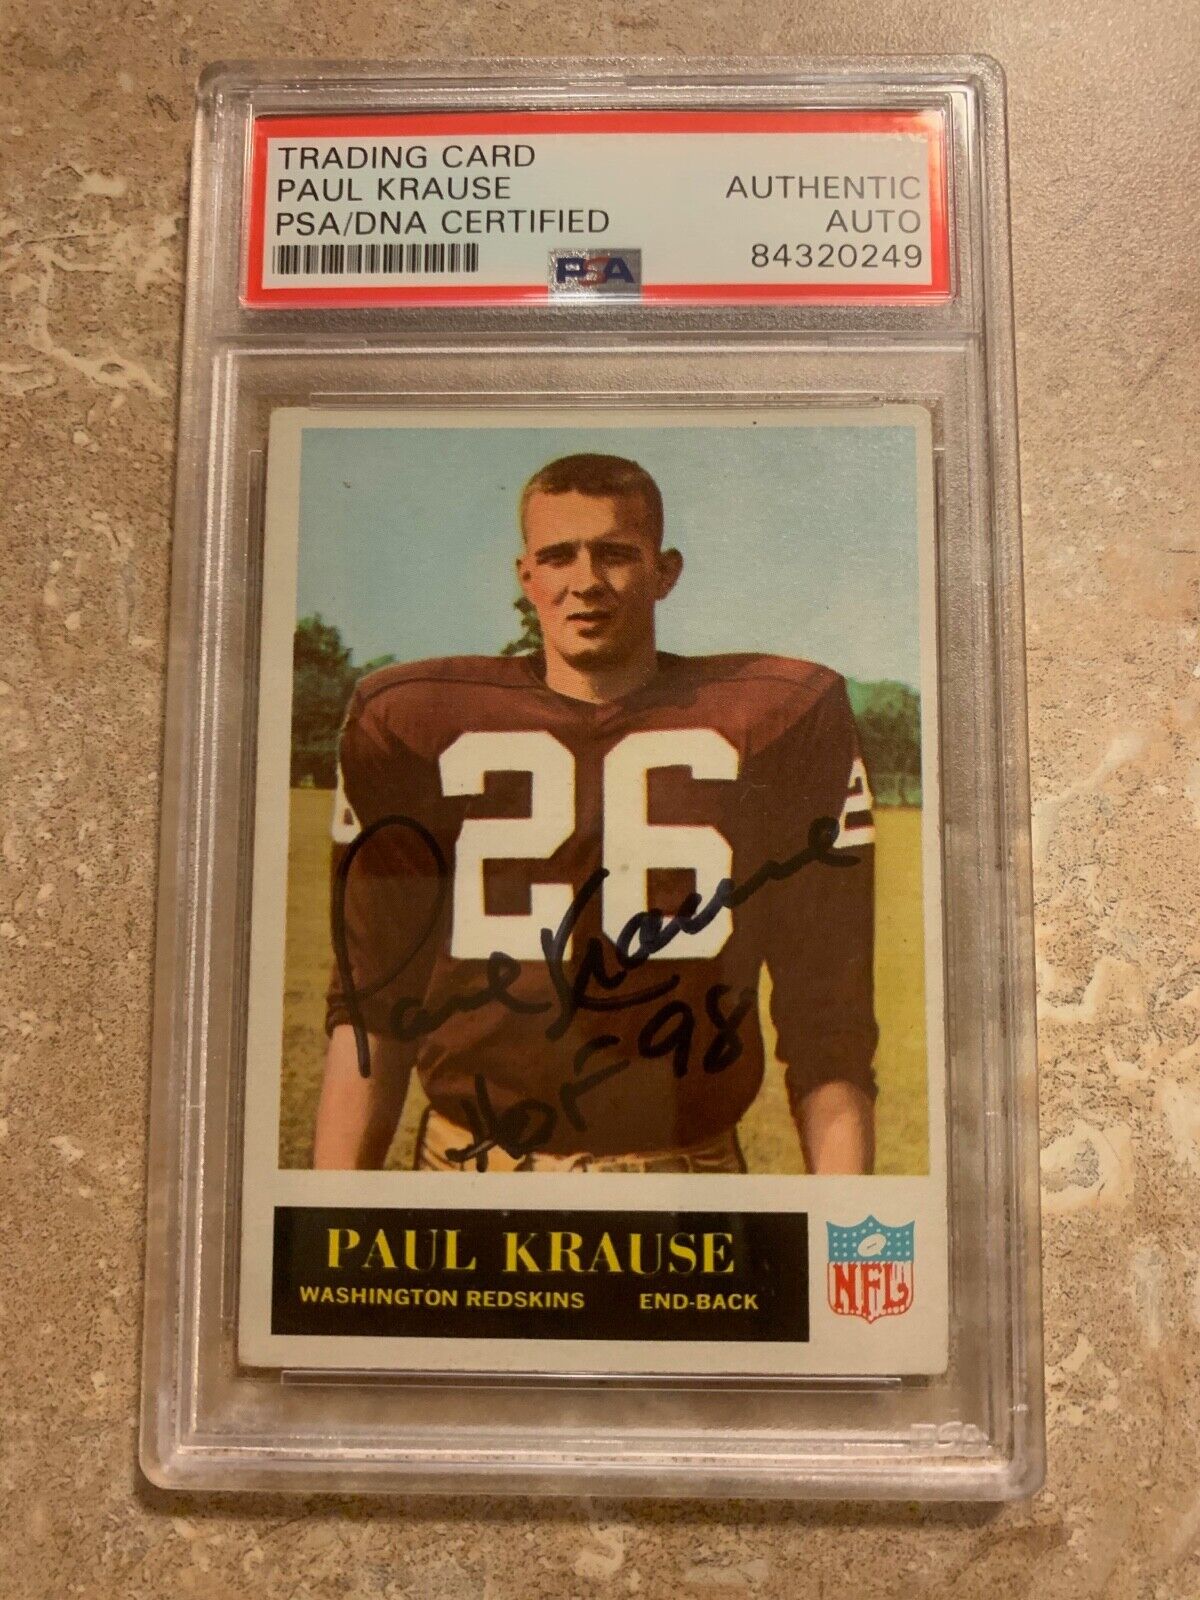 Paul Krause 1965 Philadelphia Rookie card Autographed 189 PSA slabbed